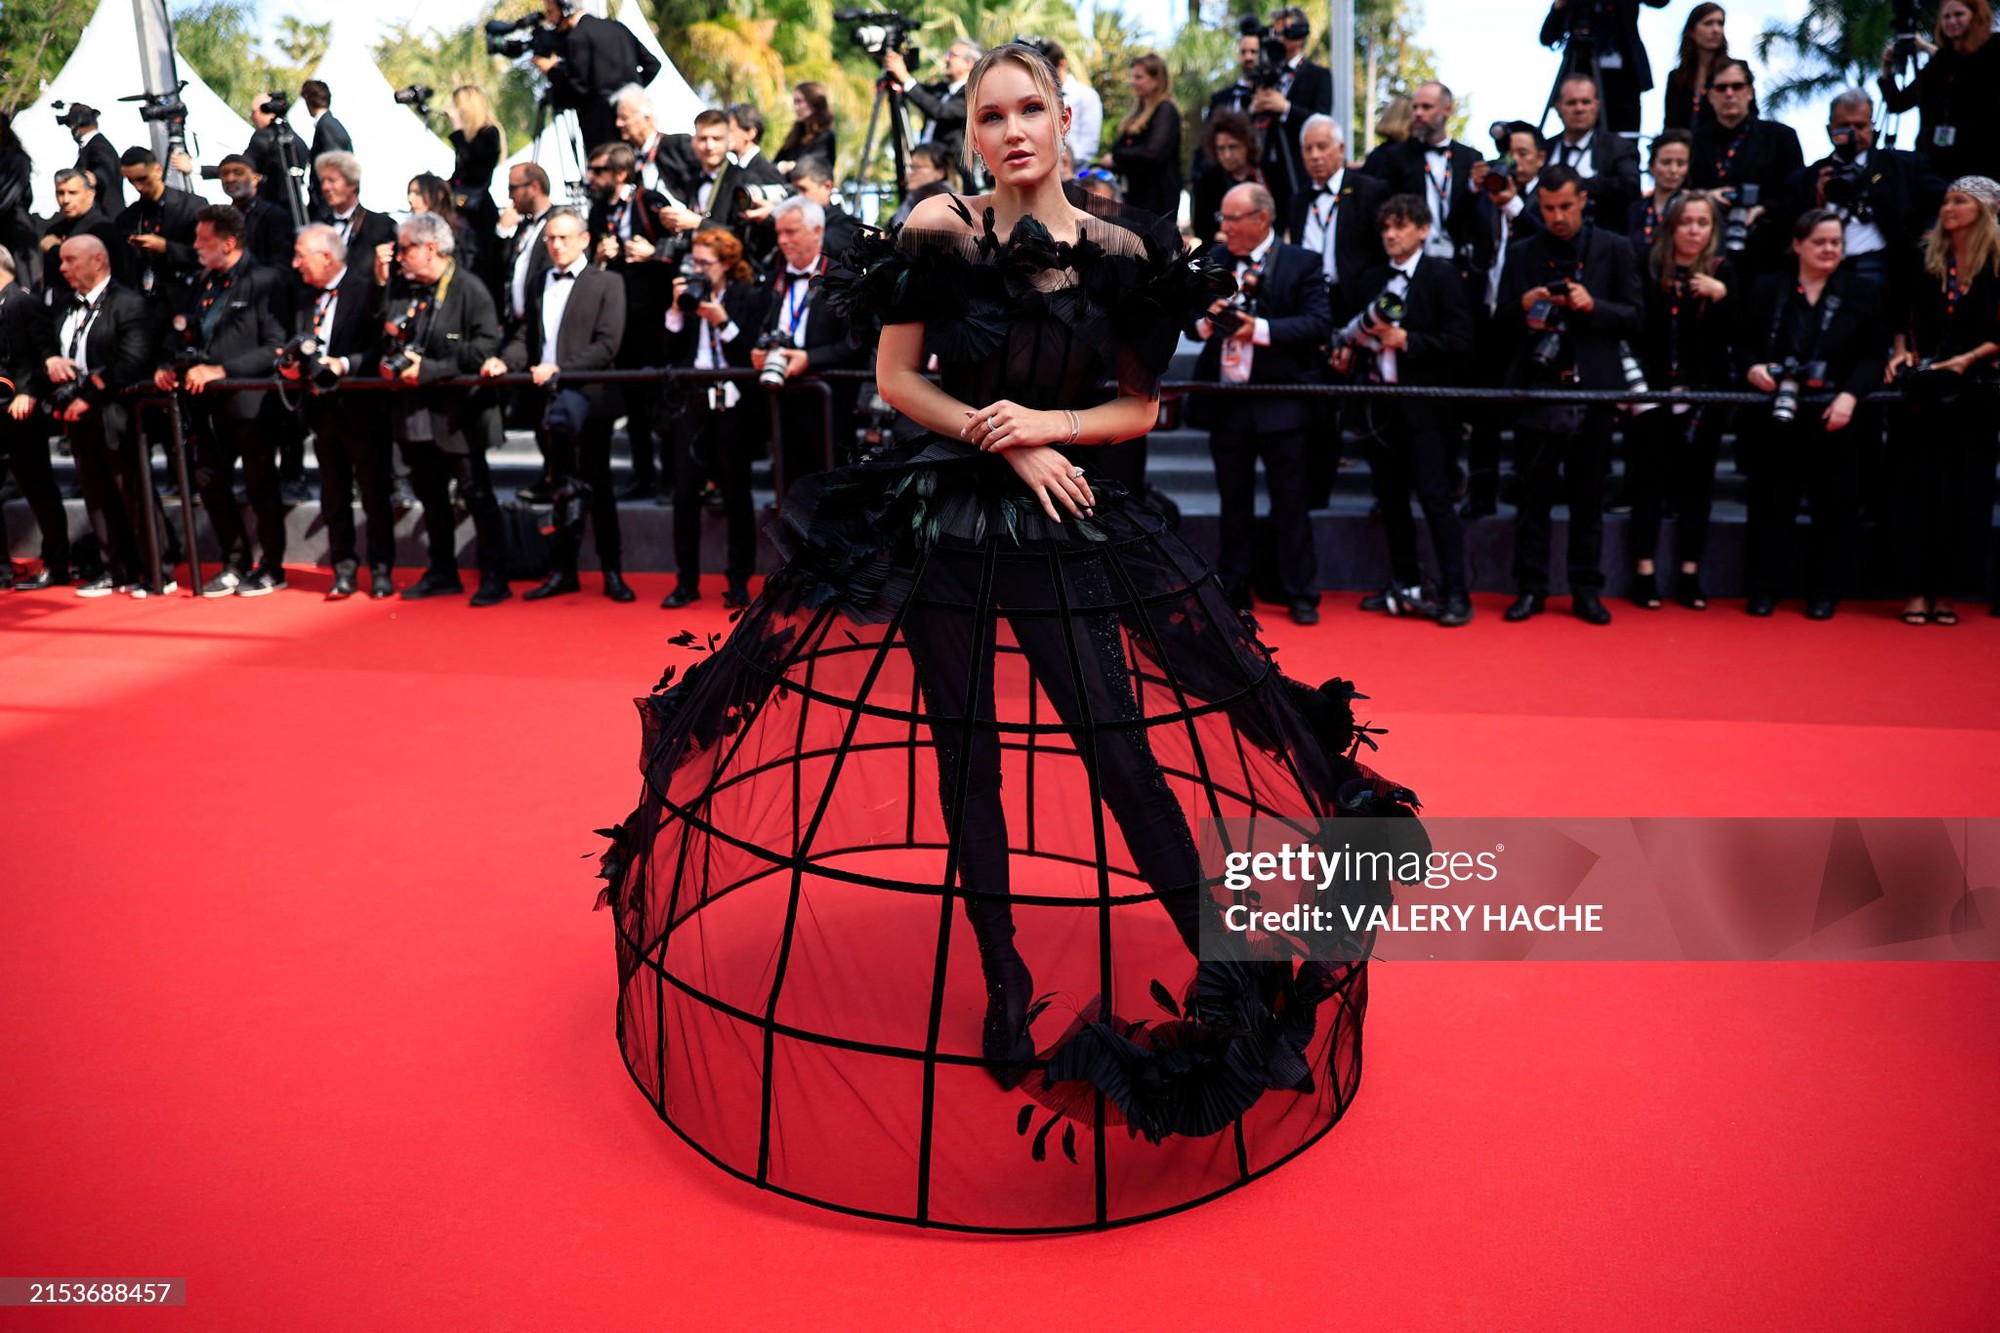 Thảm đỏ Cannes ngày 10: Bella Hadid khoe trọn body đồng hồ cát, mỹ nhân 13 Reasons Why nhận cơn mưa lời khen - Ảnh 11.